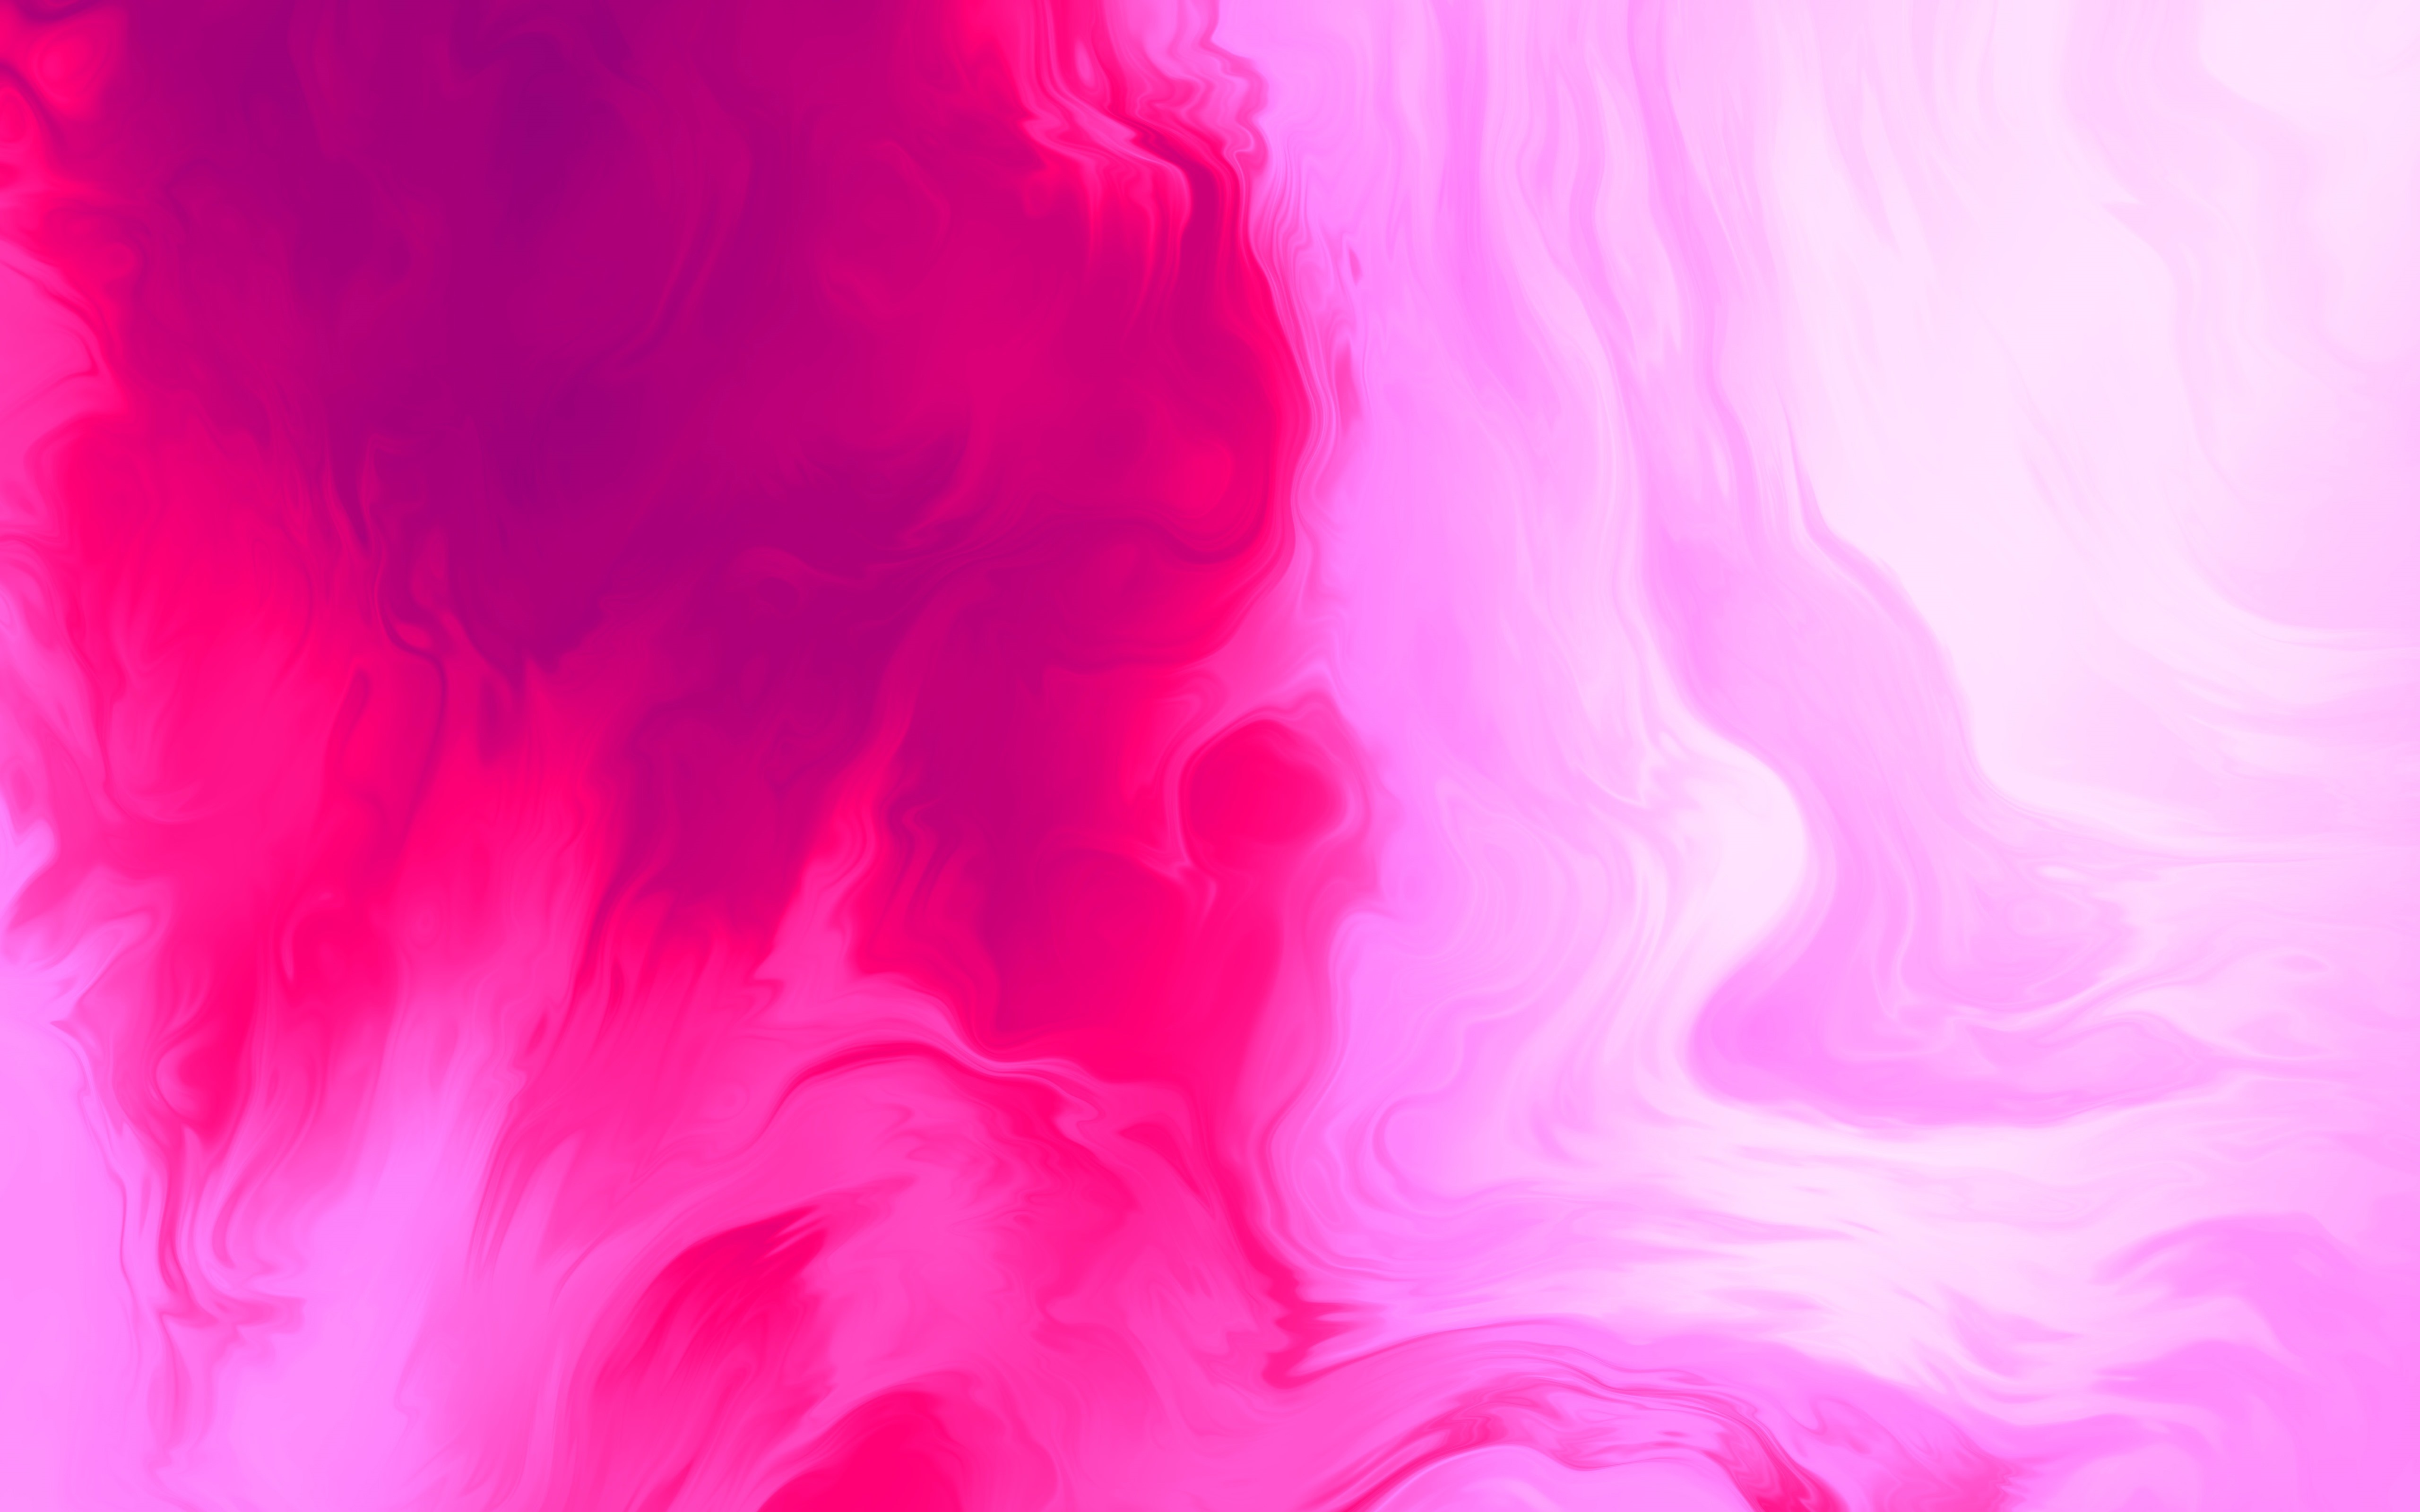 papel de parede para PC, em 4k, com uma flor delicada no centro, na cor  rosa escuro